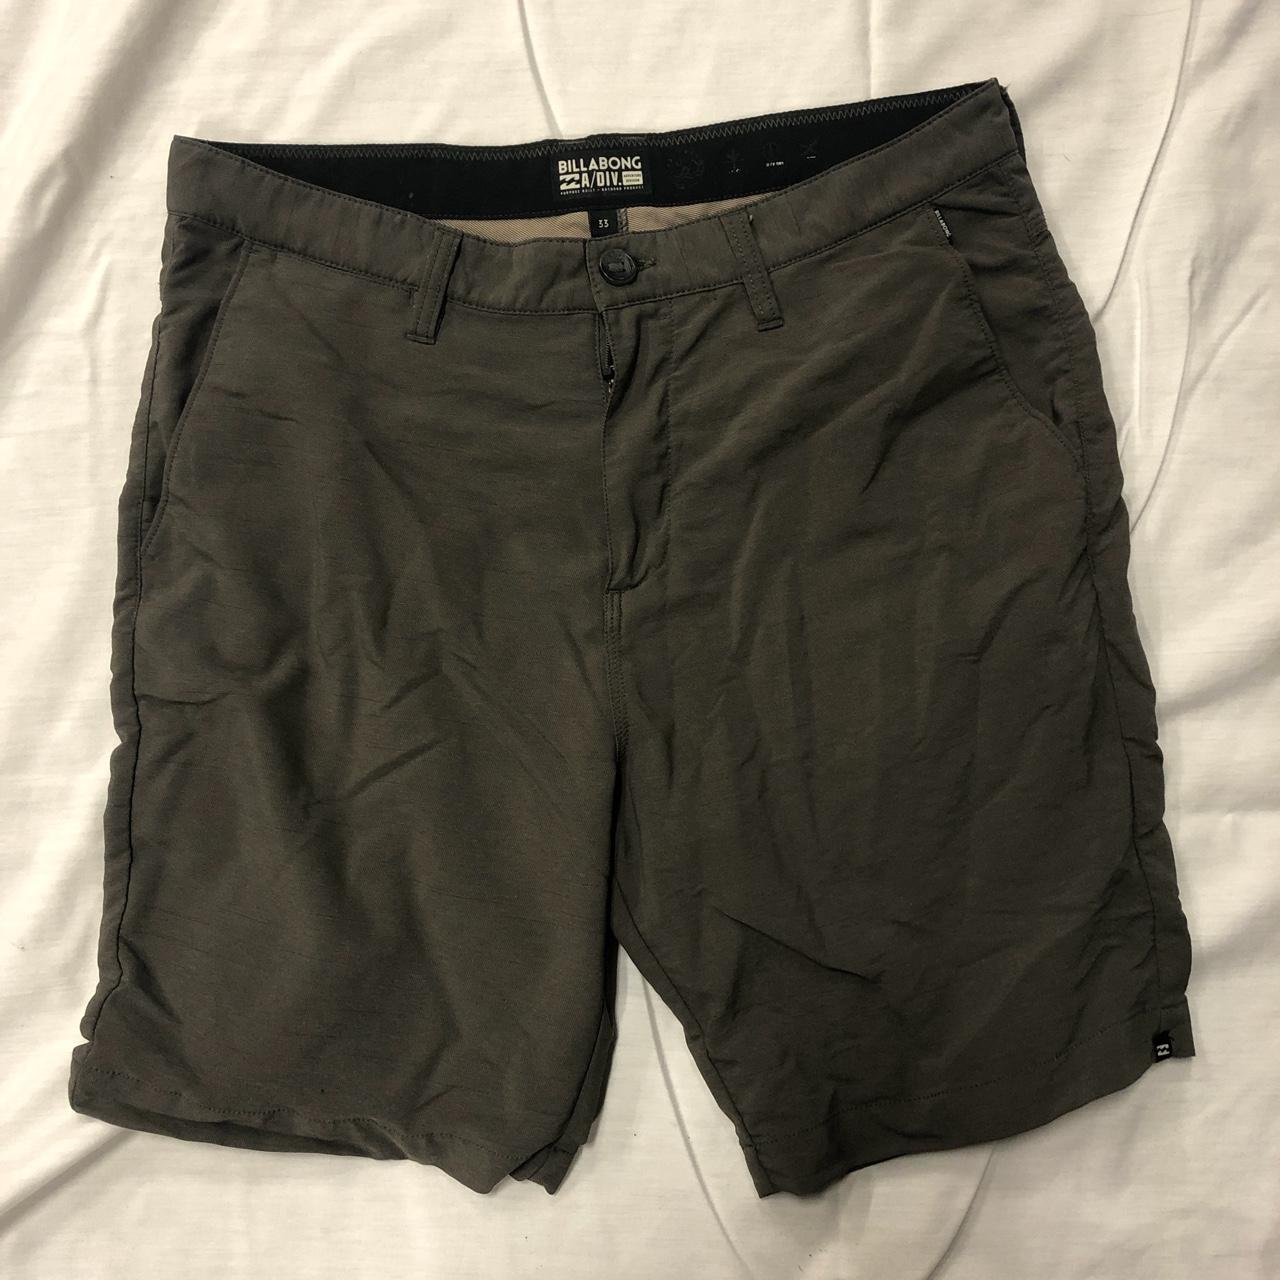 Billabong Men's Shorts